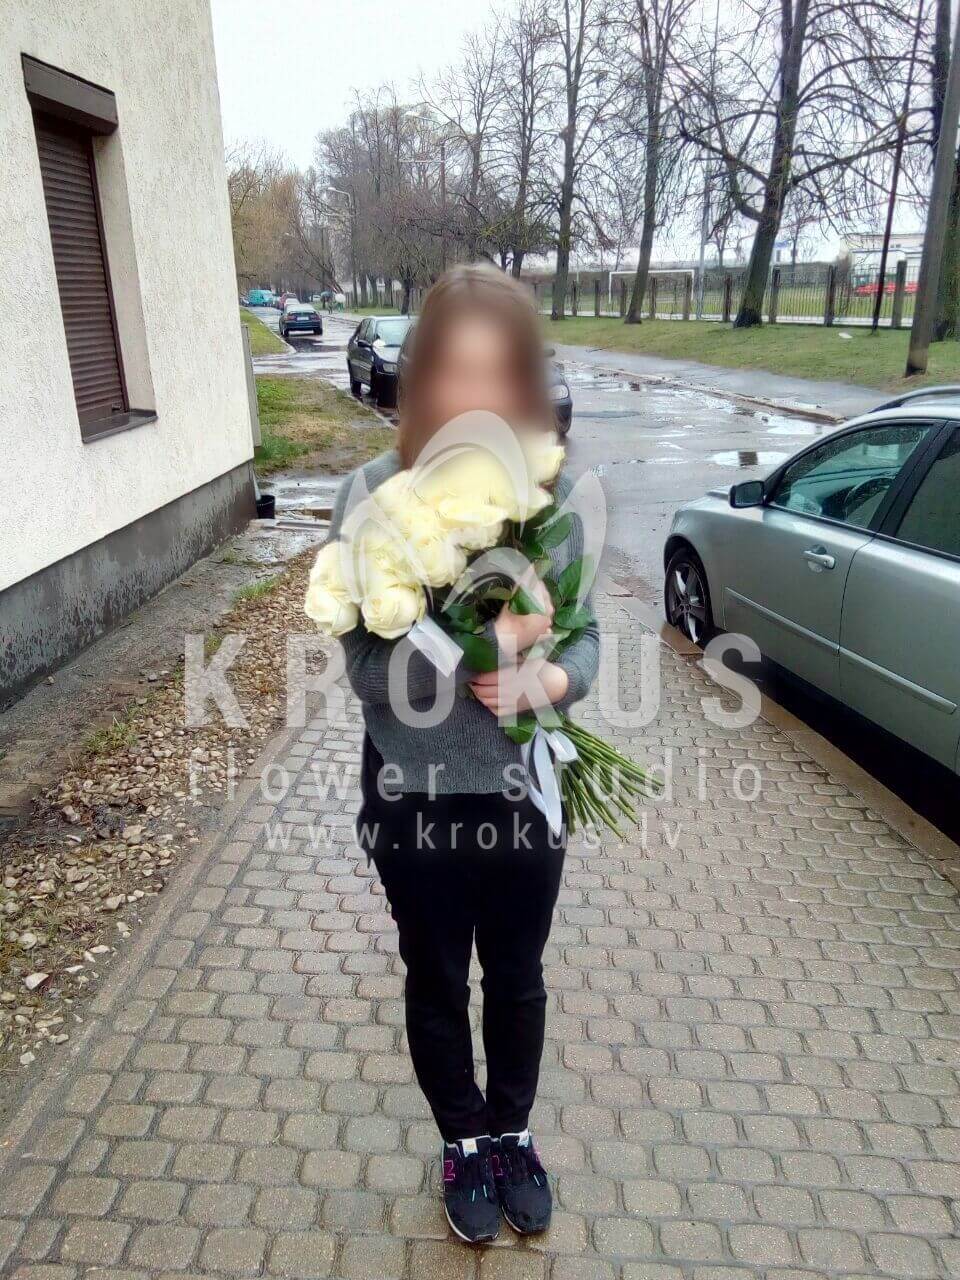 Доставка цветов в город Latvia (cиние розы)